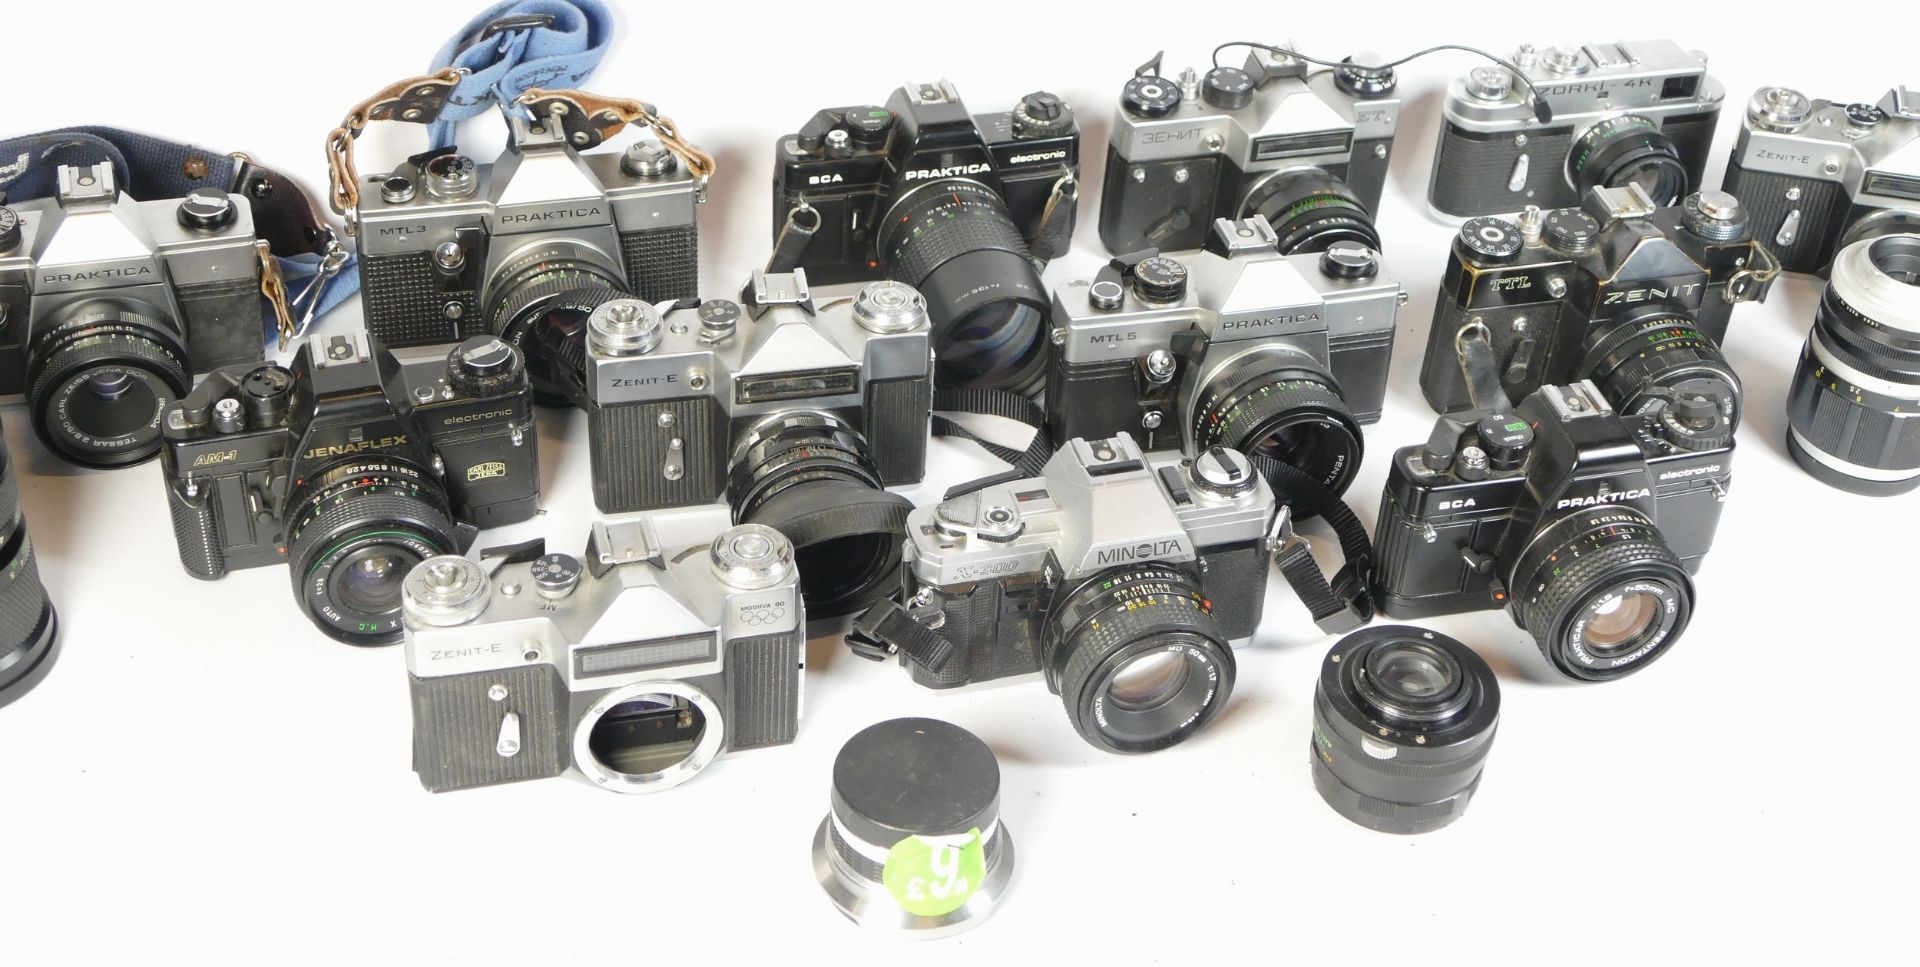 Fourteen SLR vintage film cameras to include a Praktica BCA, a Zenit E, a Minolta x-300 and a - Image 2 of 3